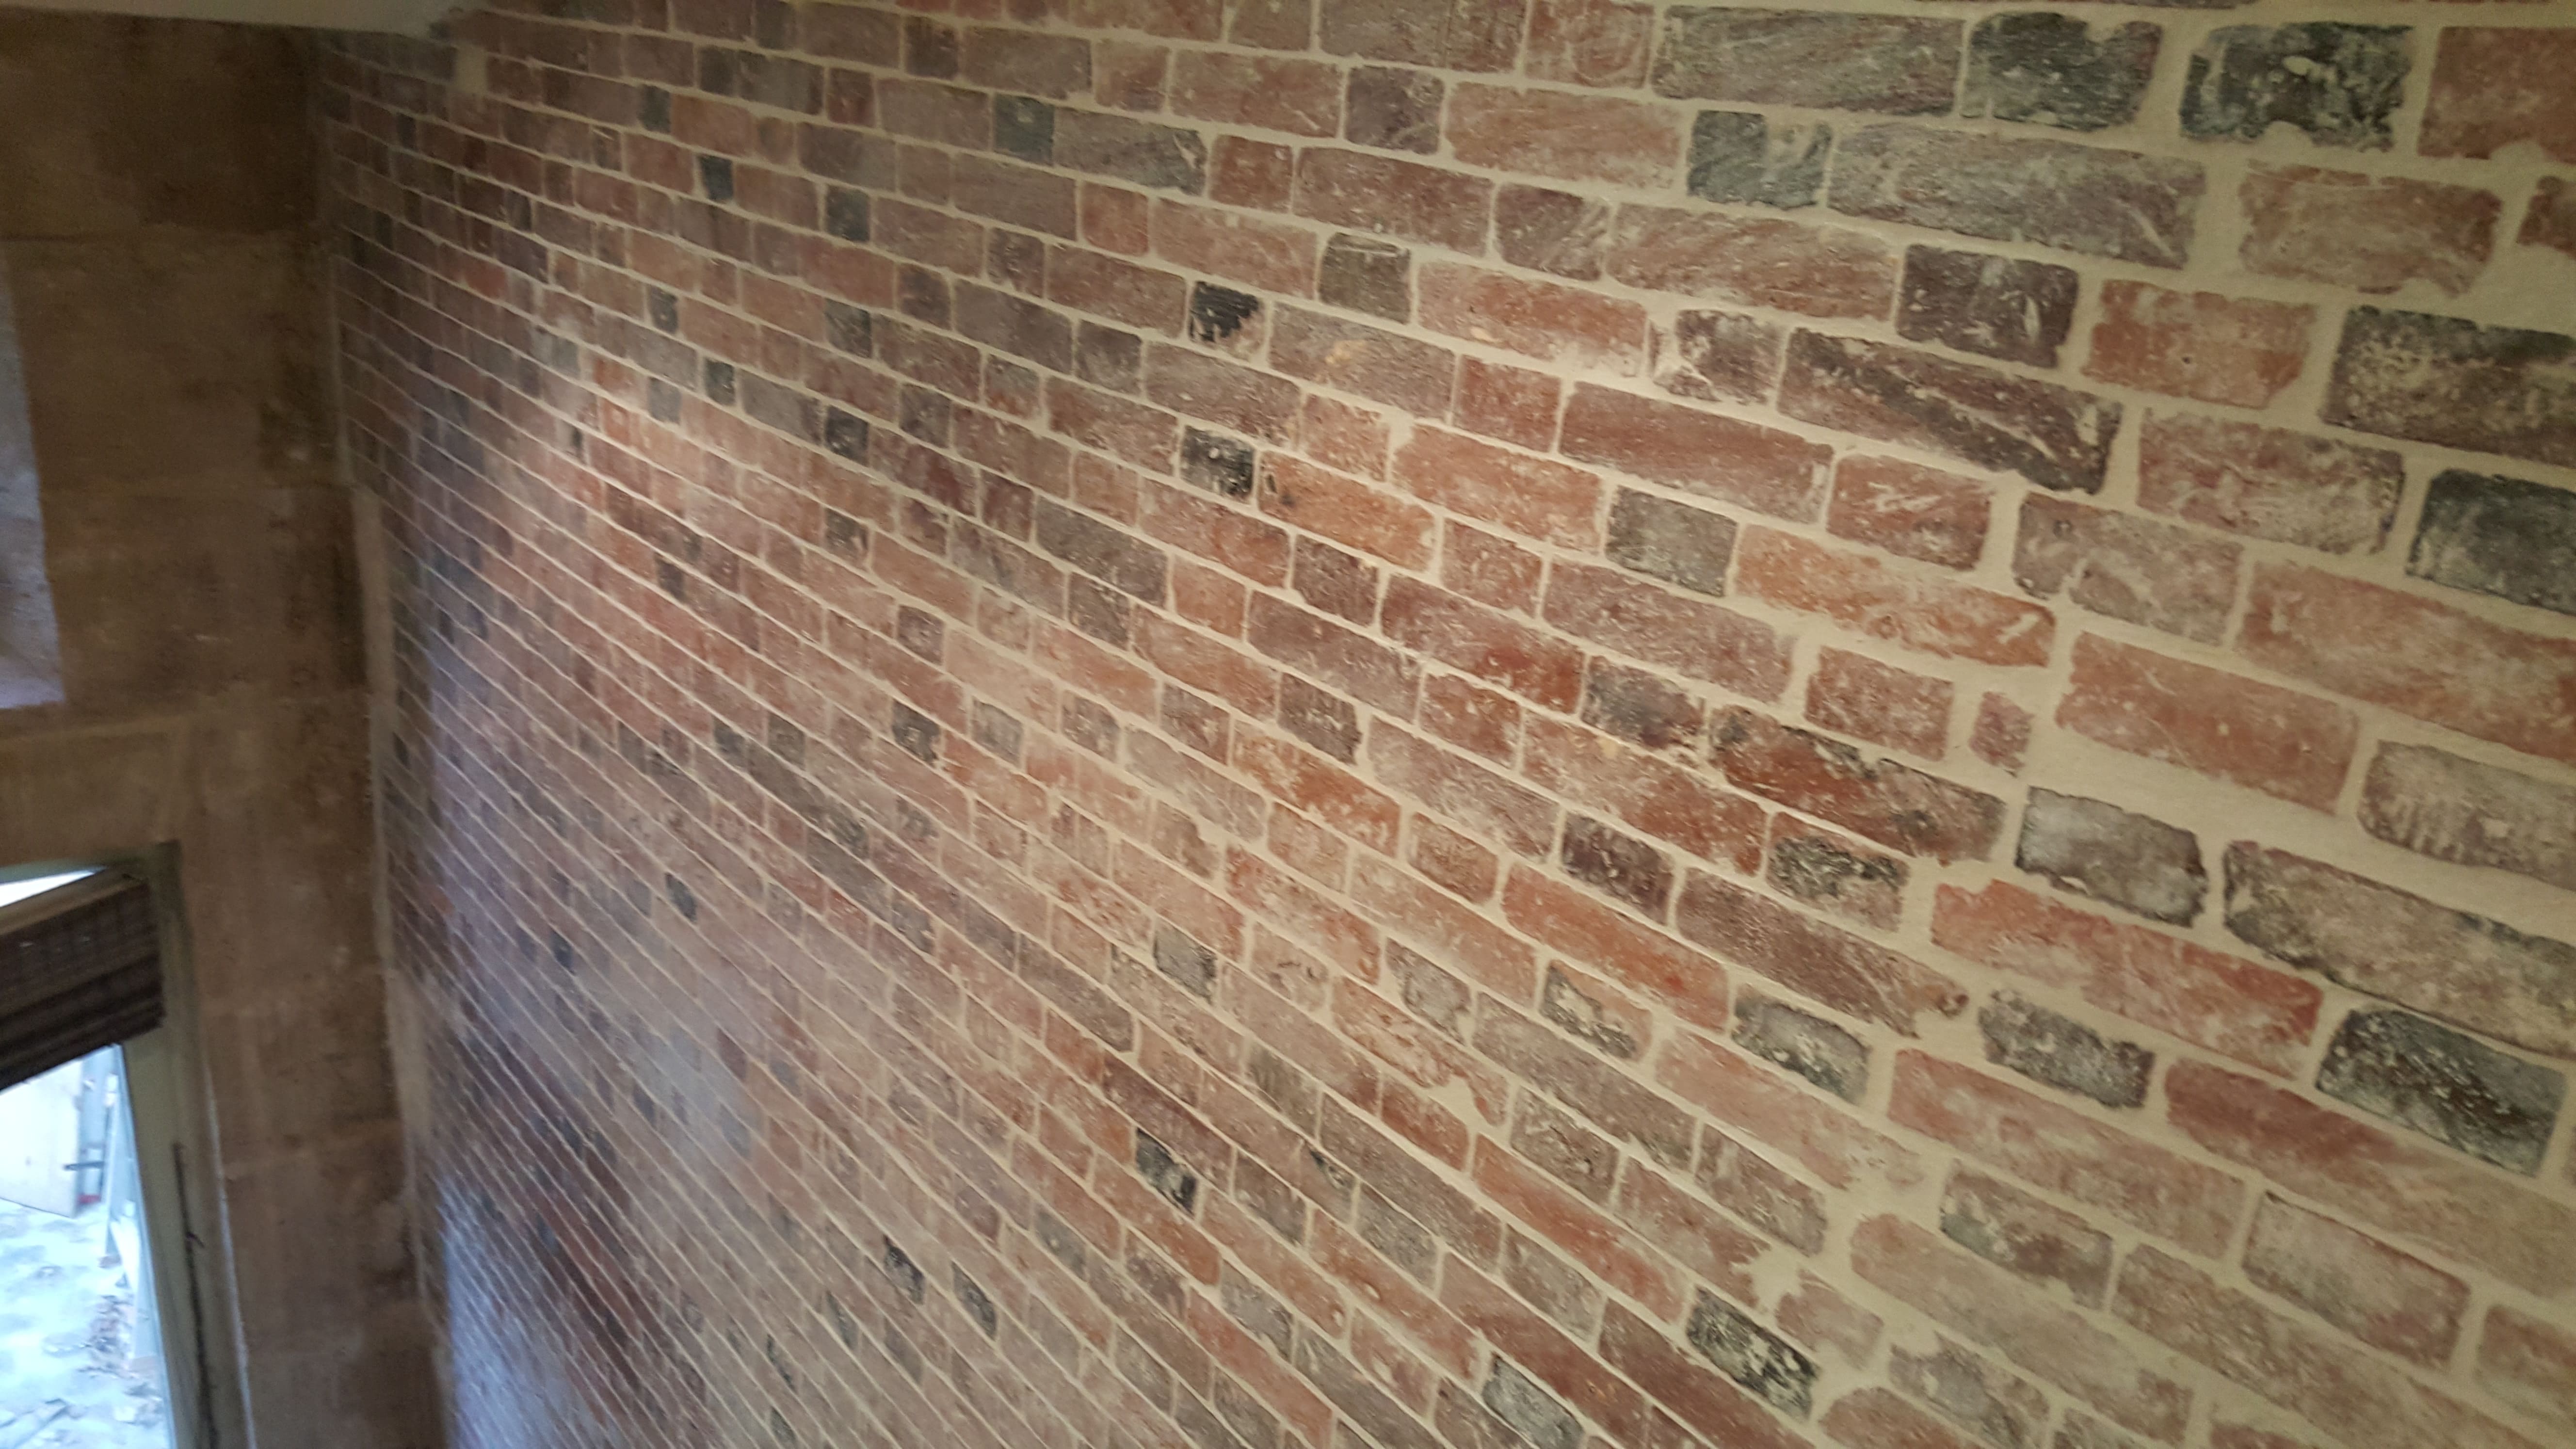 travaux-de-renovation-mur-de-brique-2-nettoyage-detachage-et-retapage-des-joints-societe-texas-batiment-min